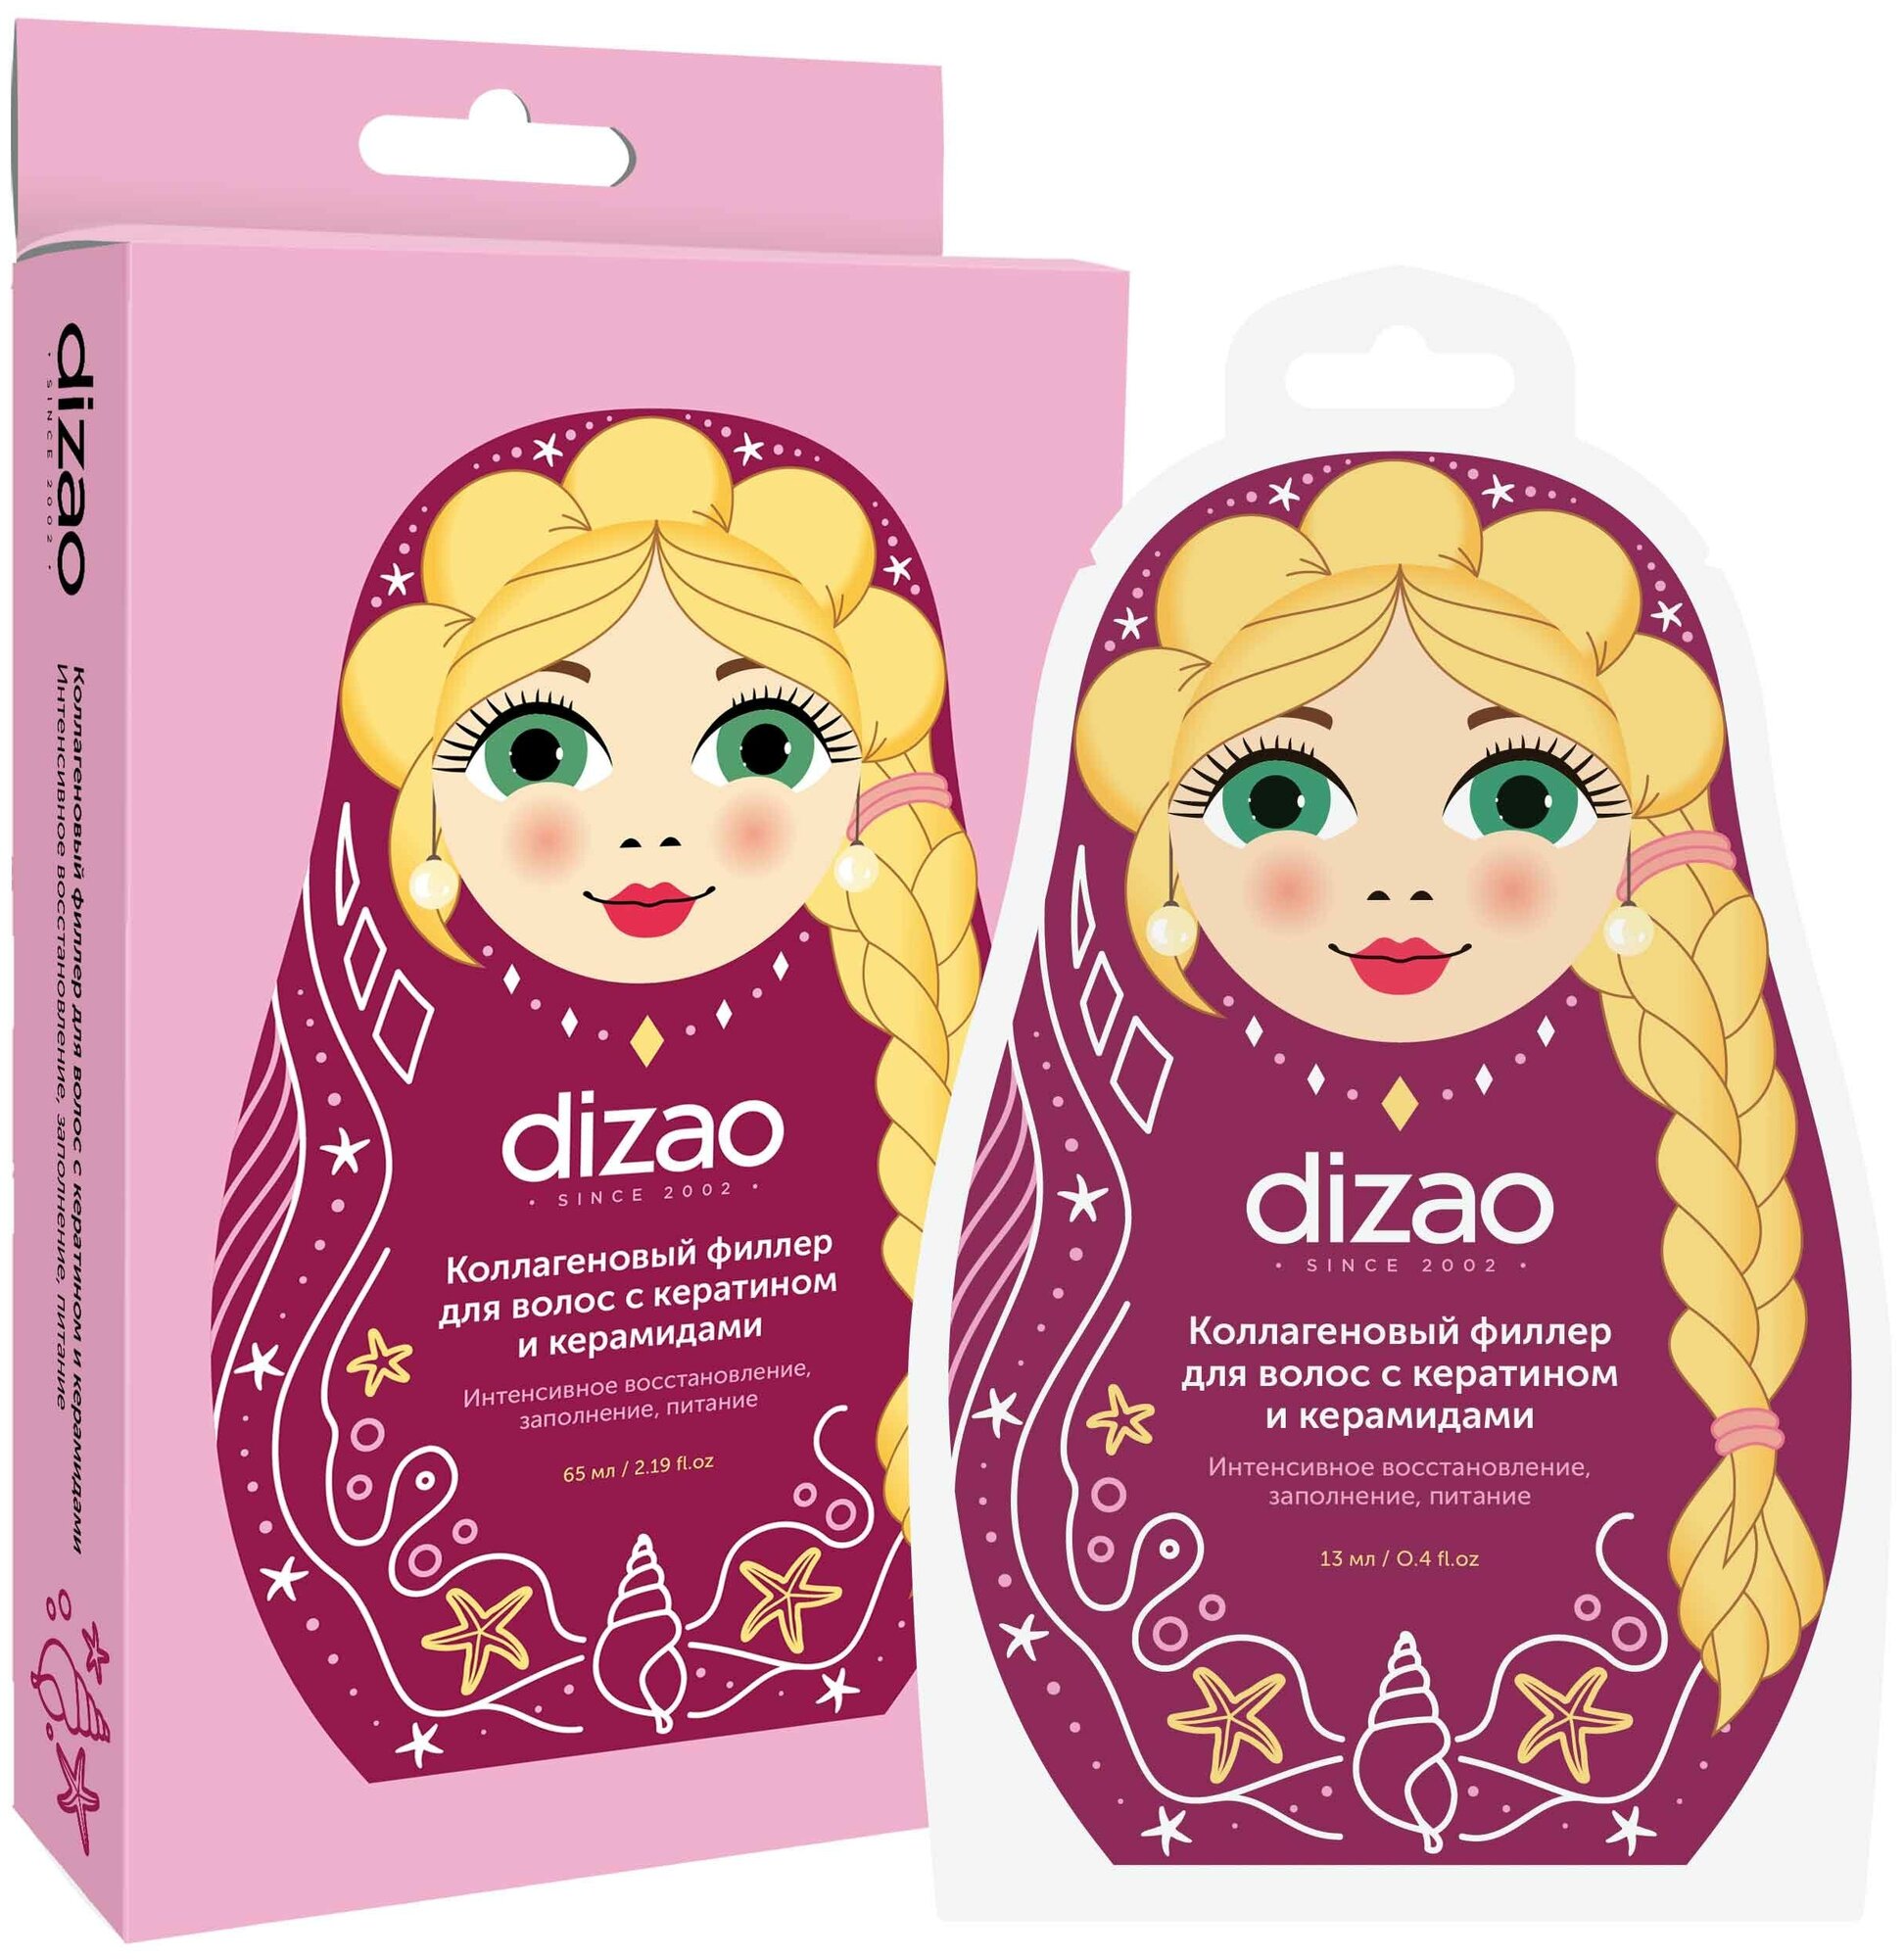 Dizao Коллагеновый филлер для волос с кератином и керамидами,1 шт (Dizao, ) - фото №1